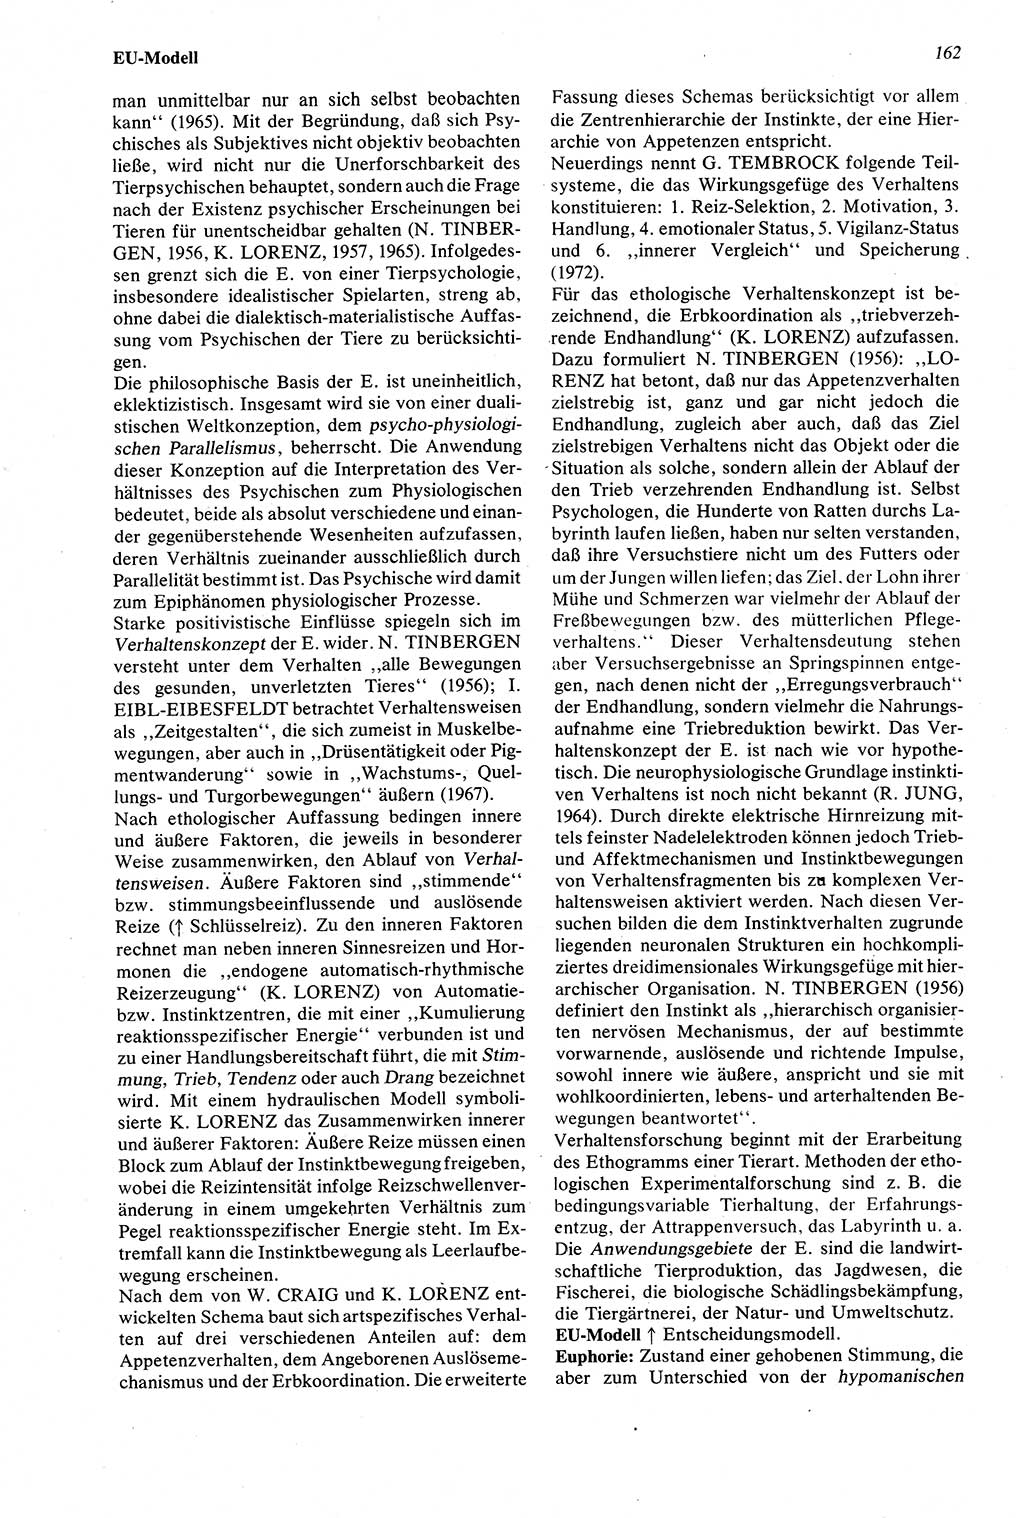 Wörterbuch der Psychologie [Deutsche Demokratische Republik (DDR)] 1976, Seite 162 (Wb. Psych. DDR 1976, S. 162)